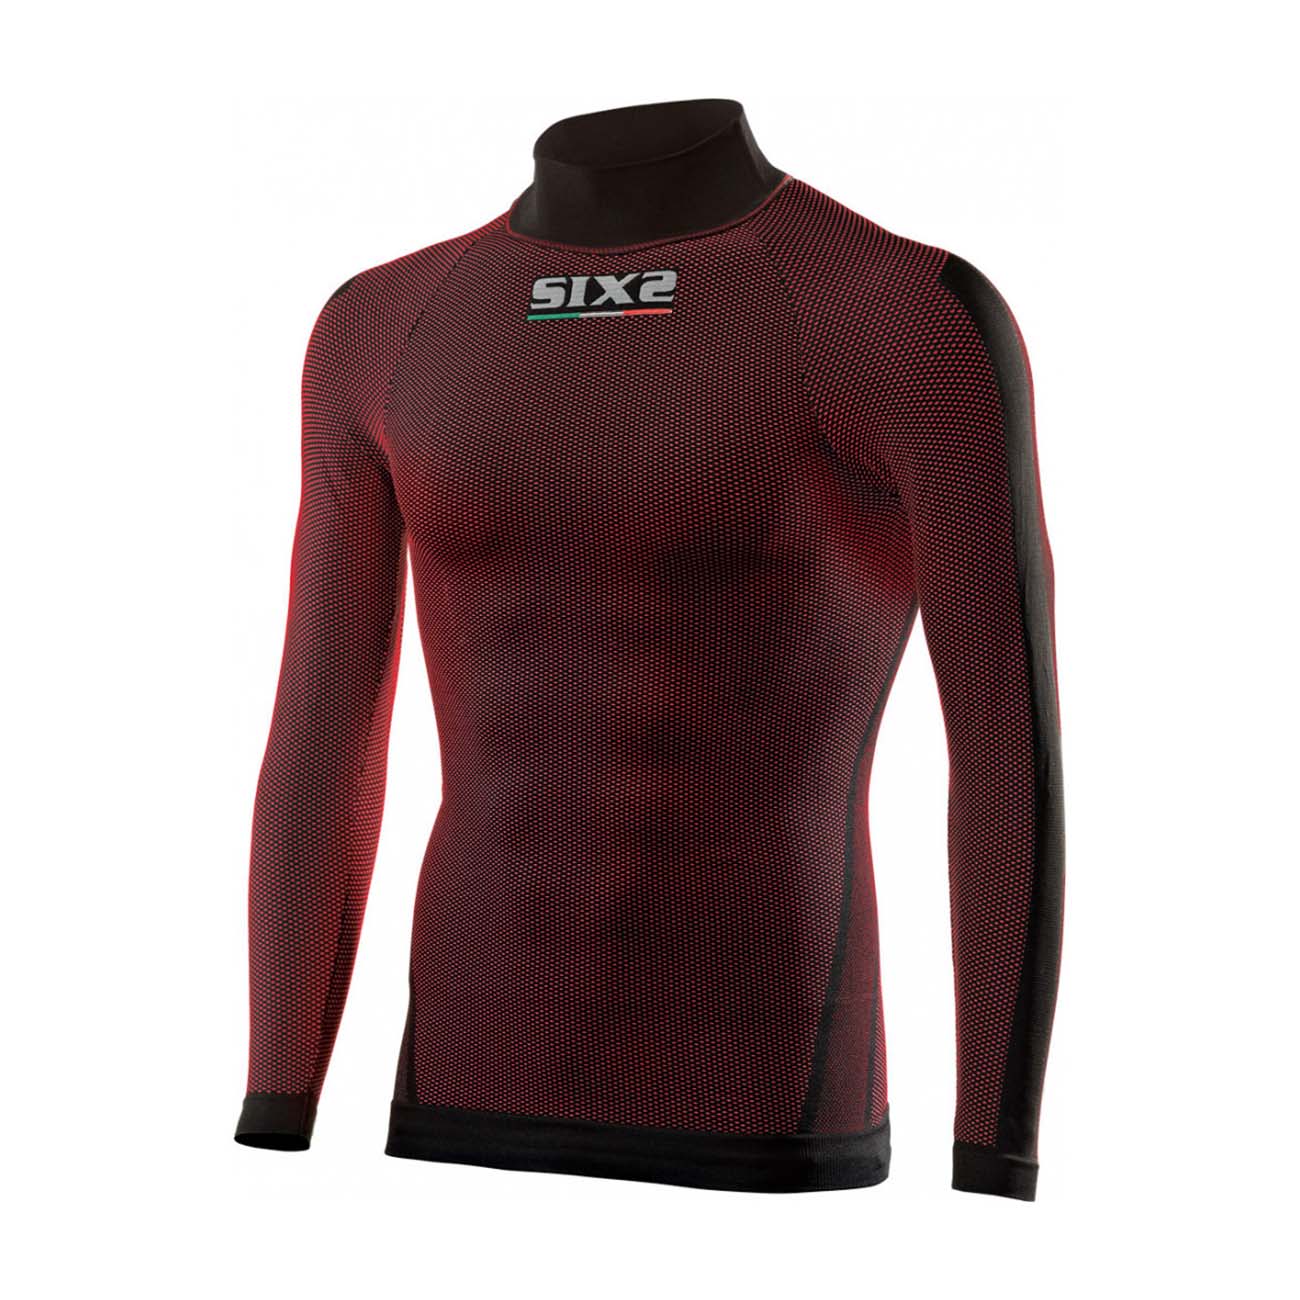 
                SIX2 Cyklistické tričko s dlhým rukávom - TS2 II - červená/bordová M-L
            